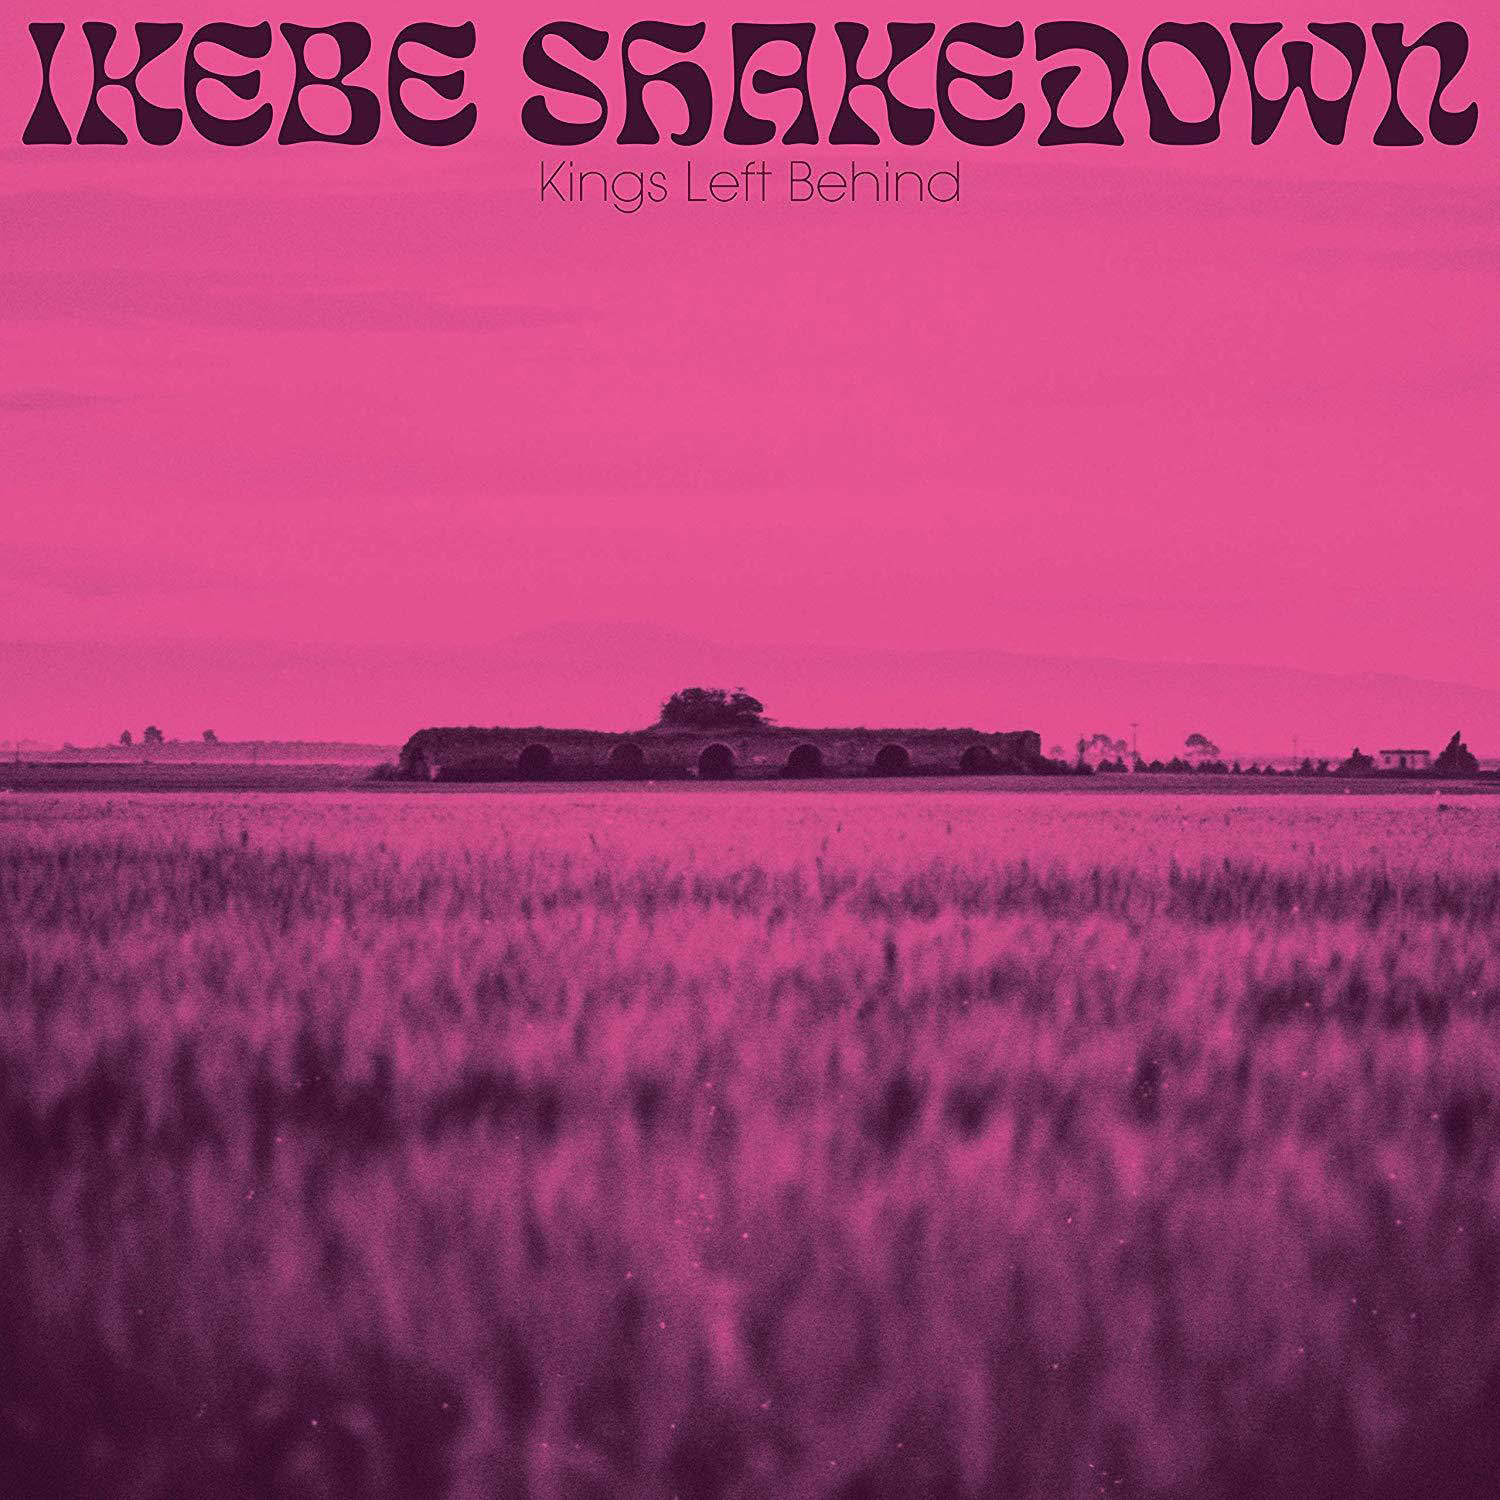 - Behind - Kings Ikebe Left Shakedown (Vinyl)